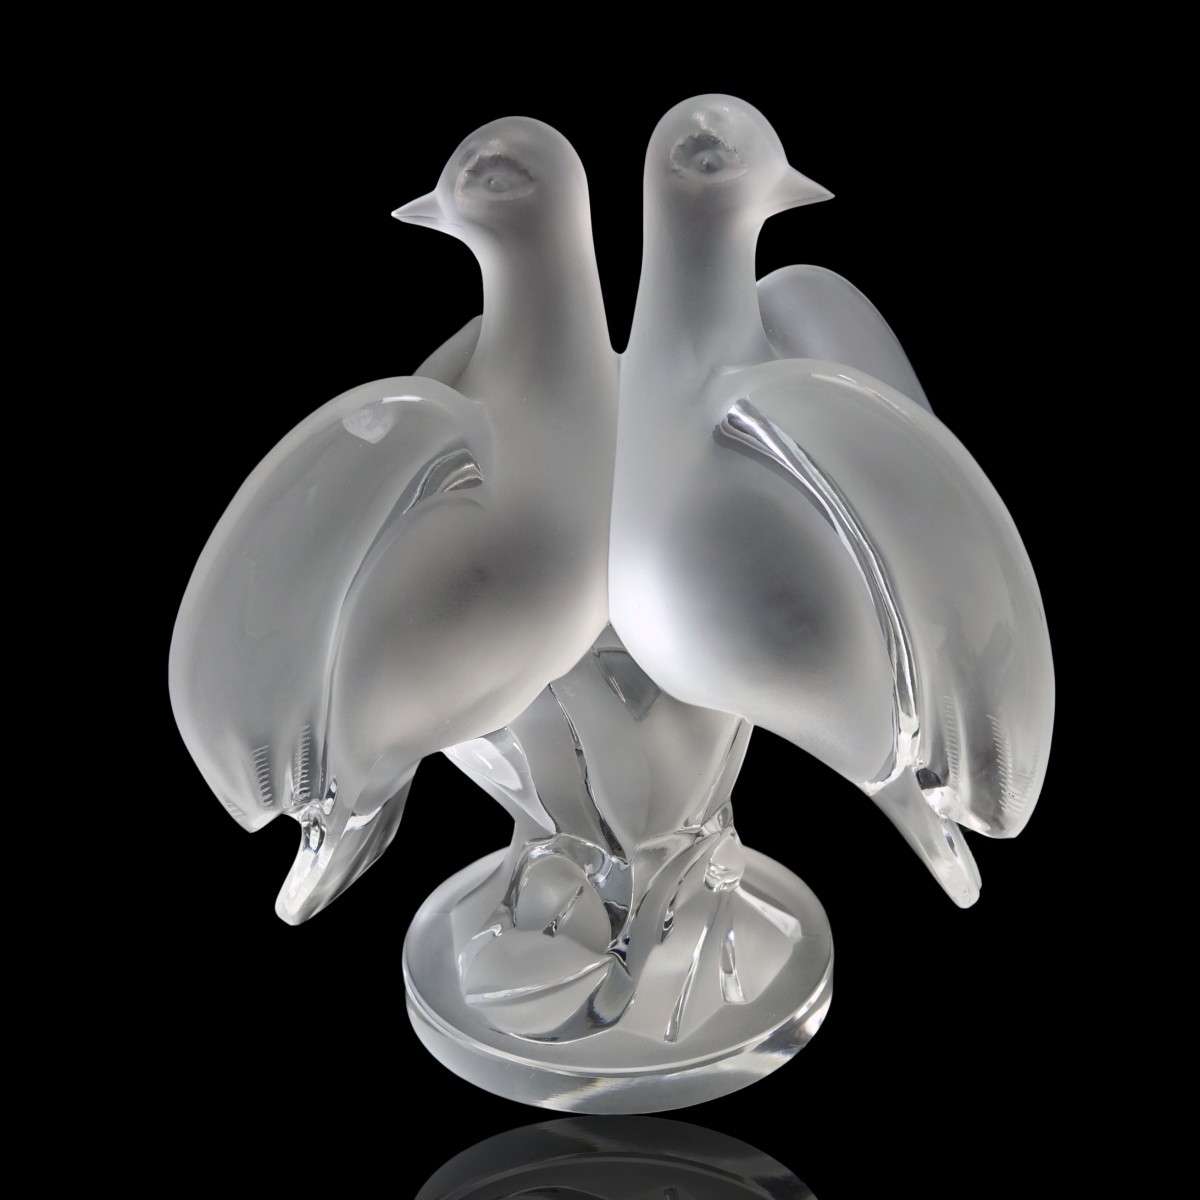 Lalique "Ariane Doves" Figurine